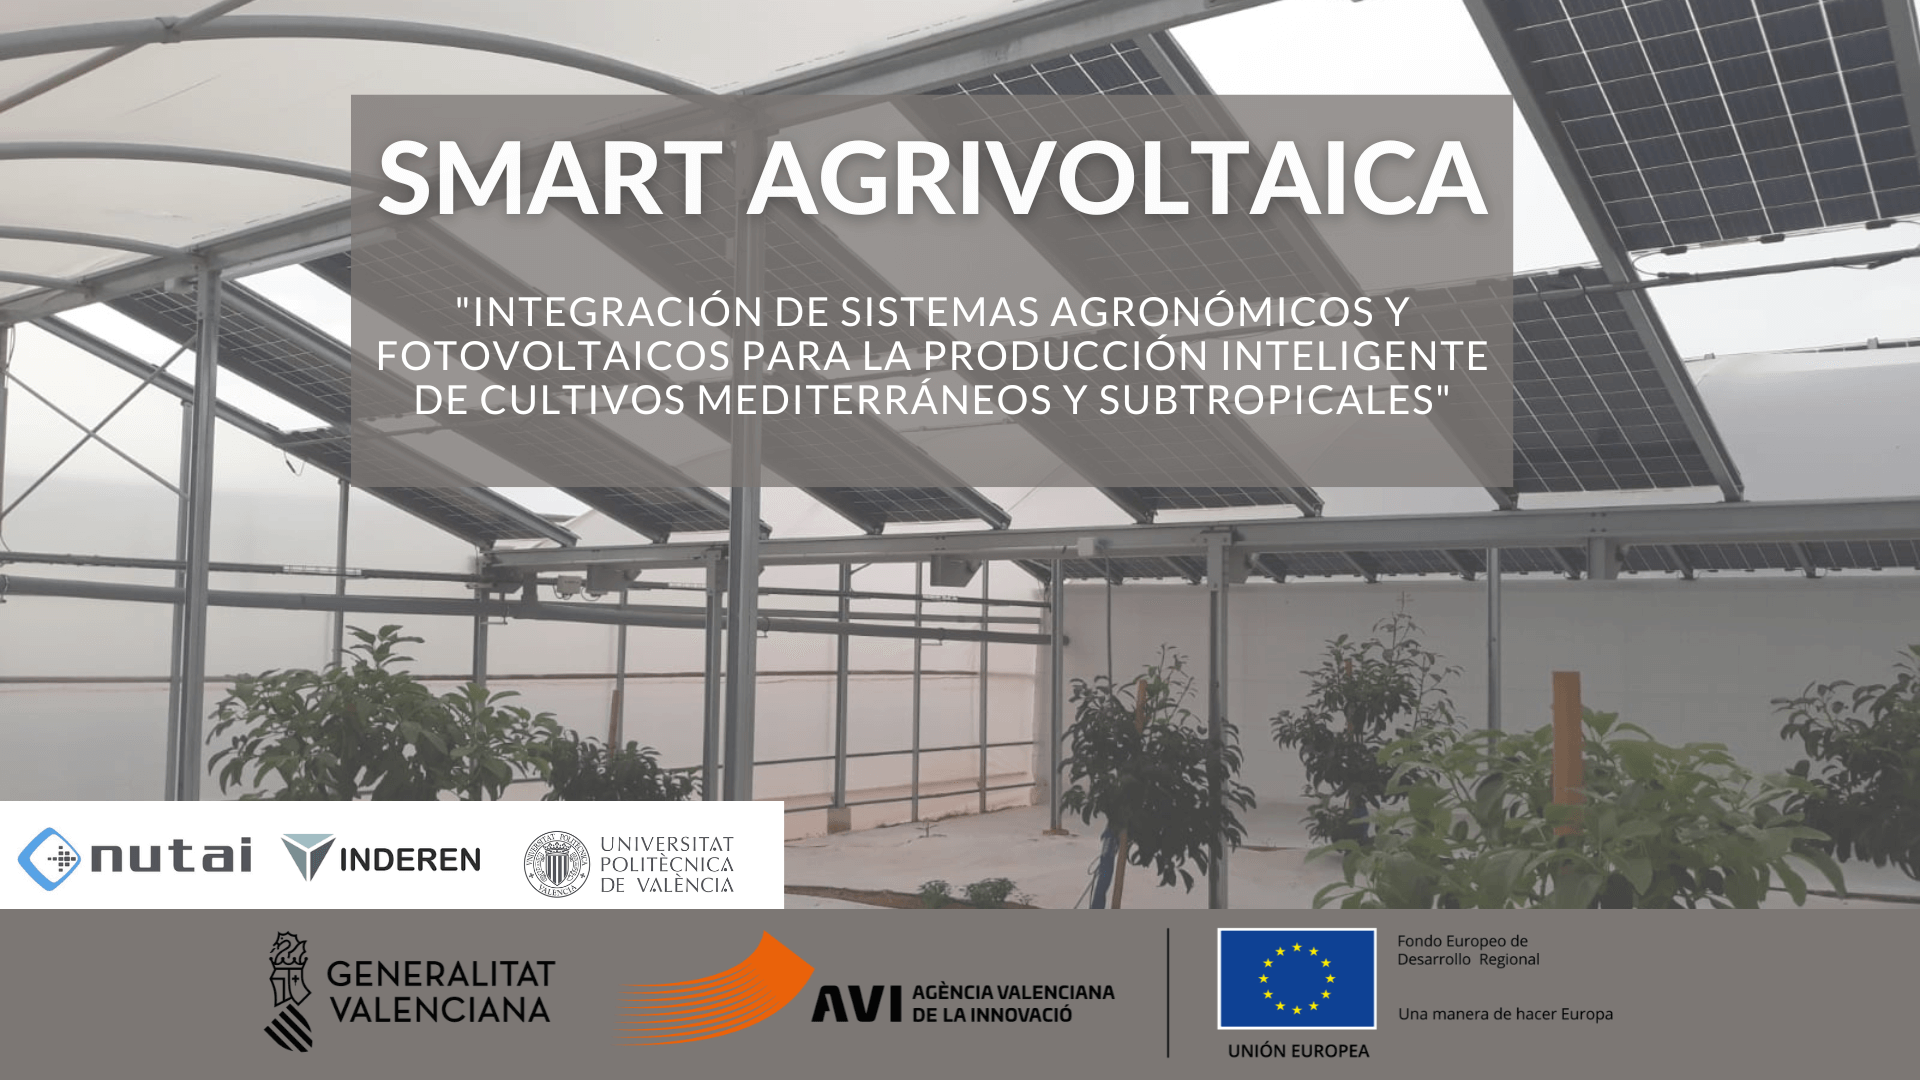 Desarrollos y avances en el proyecto SMART AGRIVOLTAICA